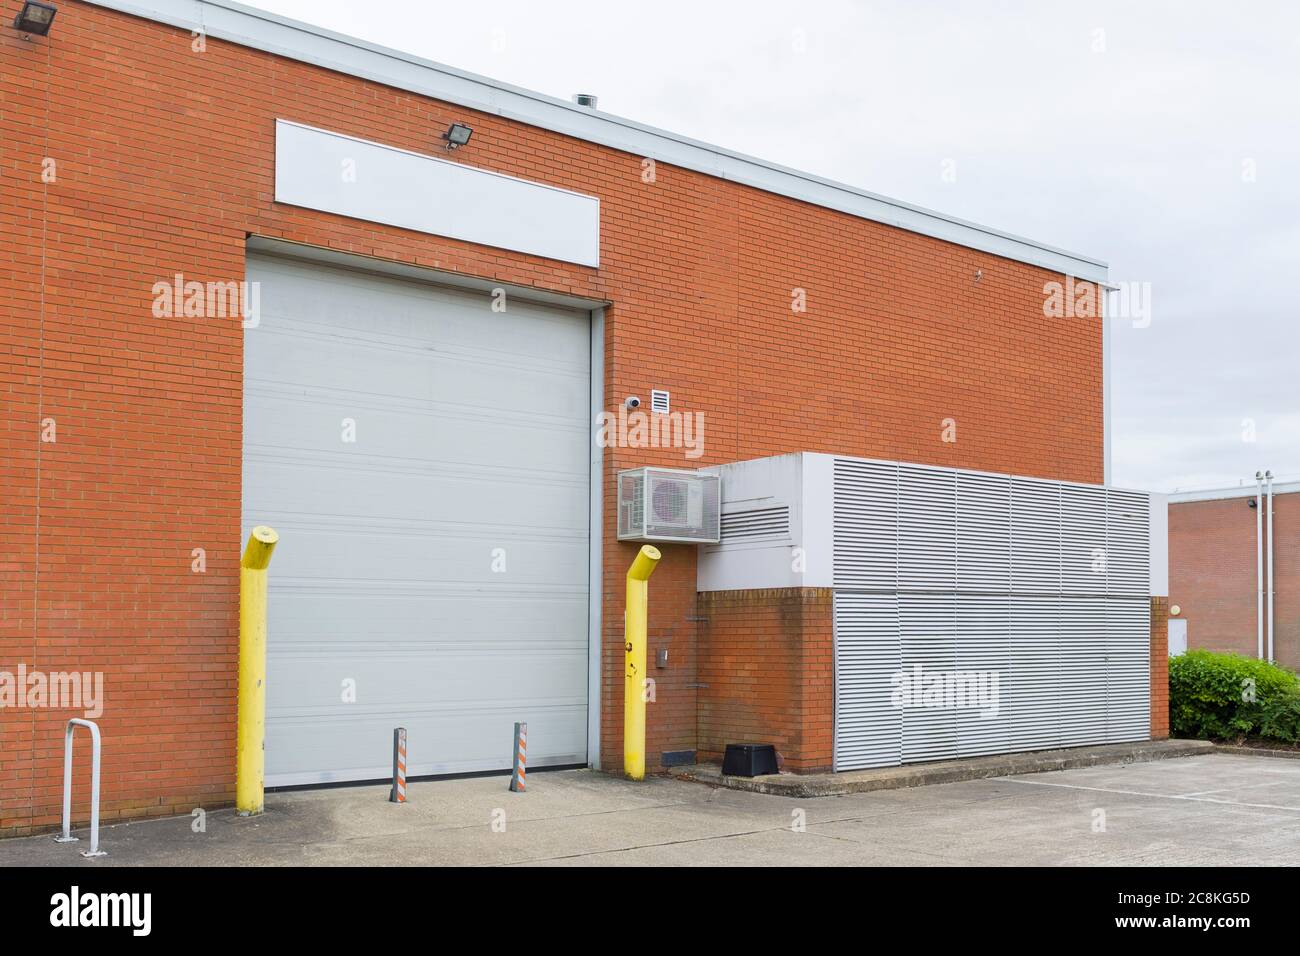 Unità di stoccaggio, magazzino o locali commerciali vuoti in una zona industriale in Inghilterra, Regno Unito Foto Stock